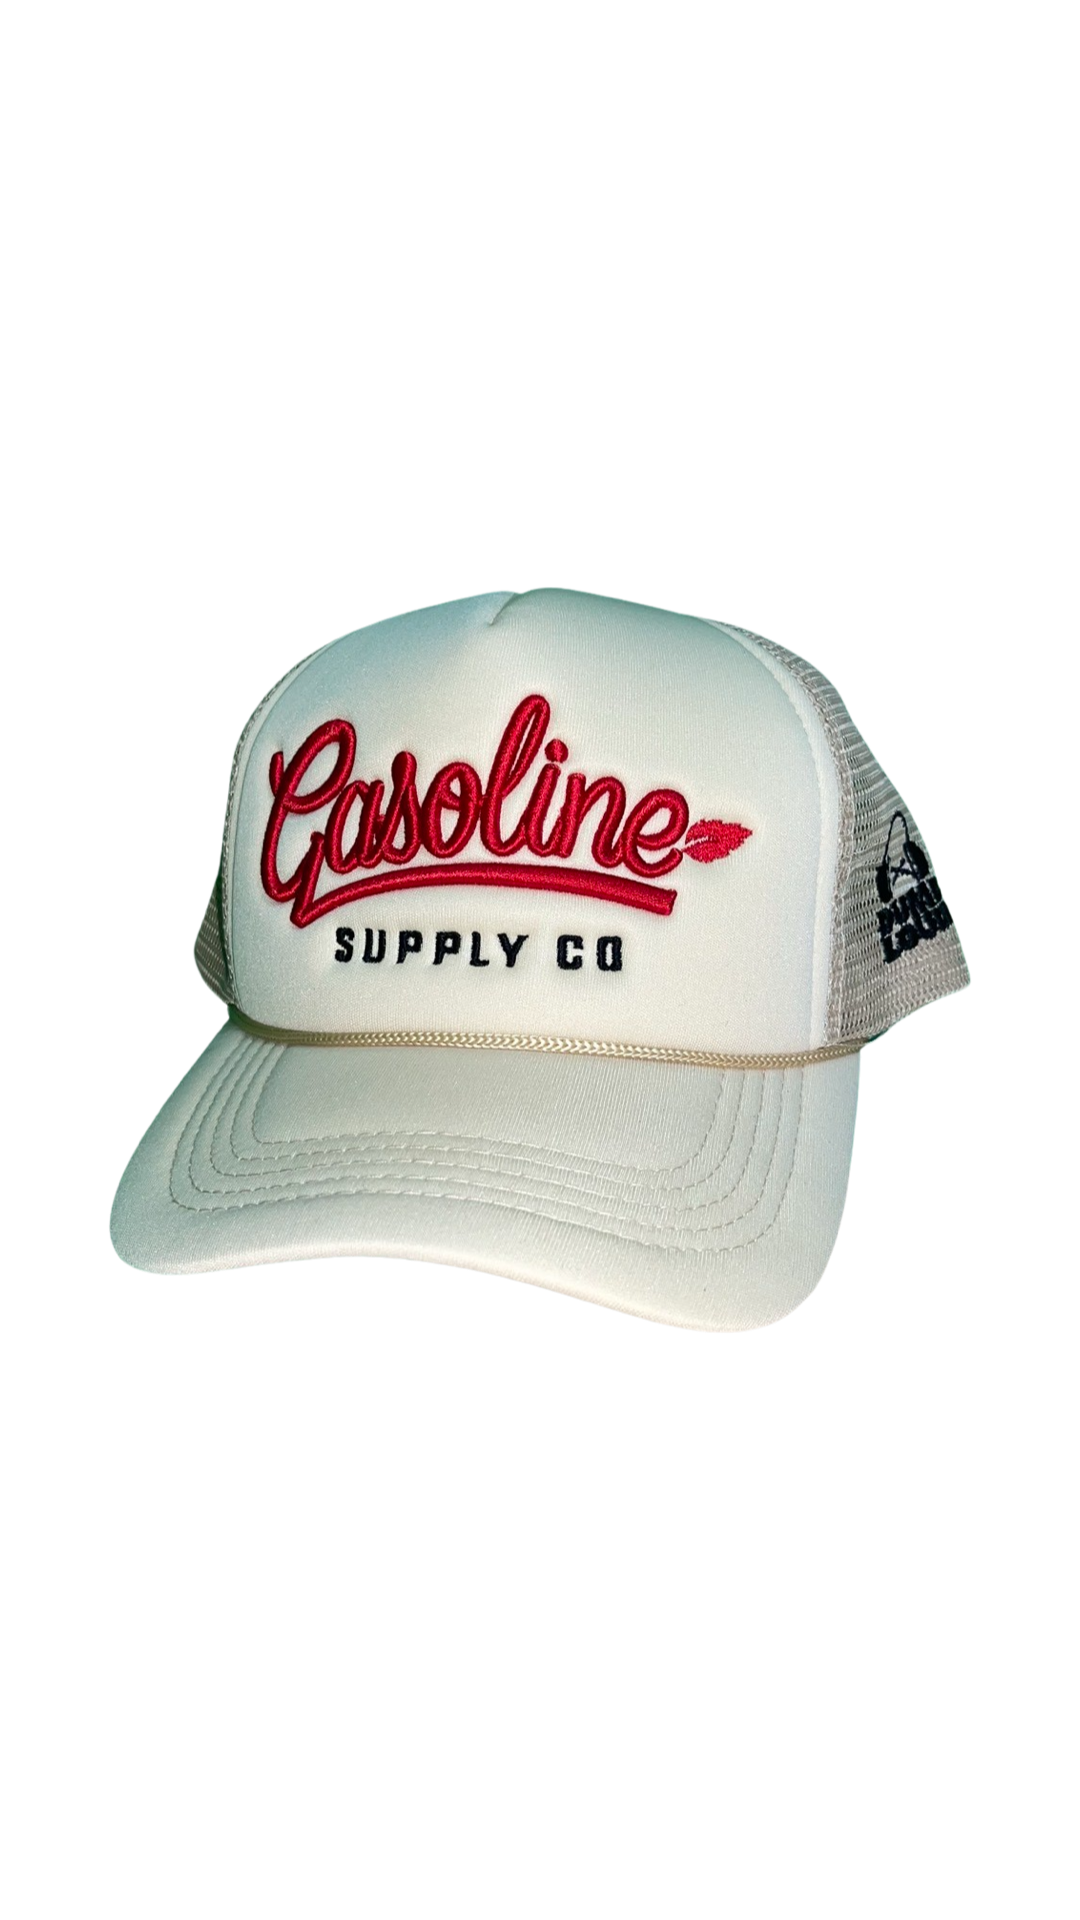 Gasoline supply Trucker Hat